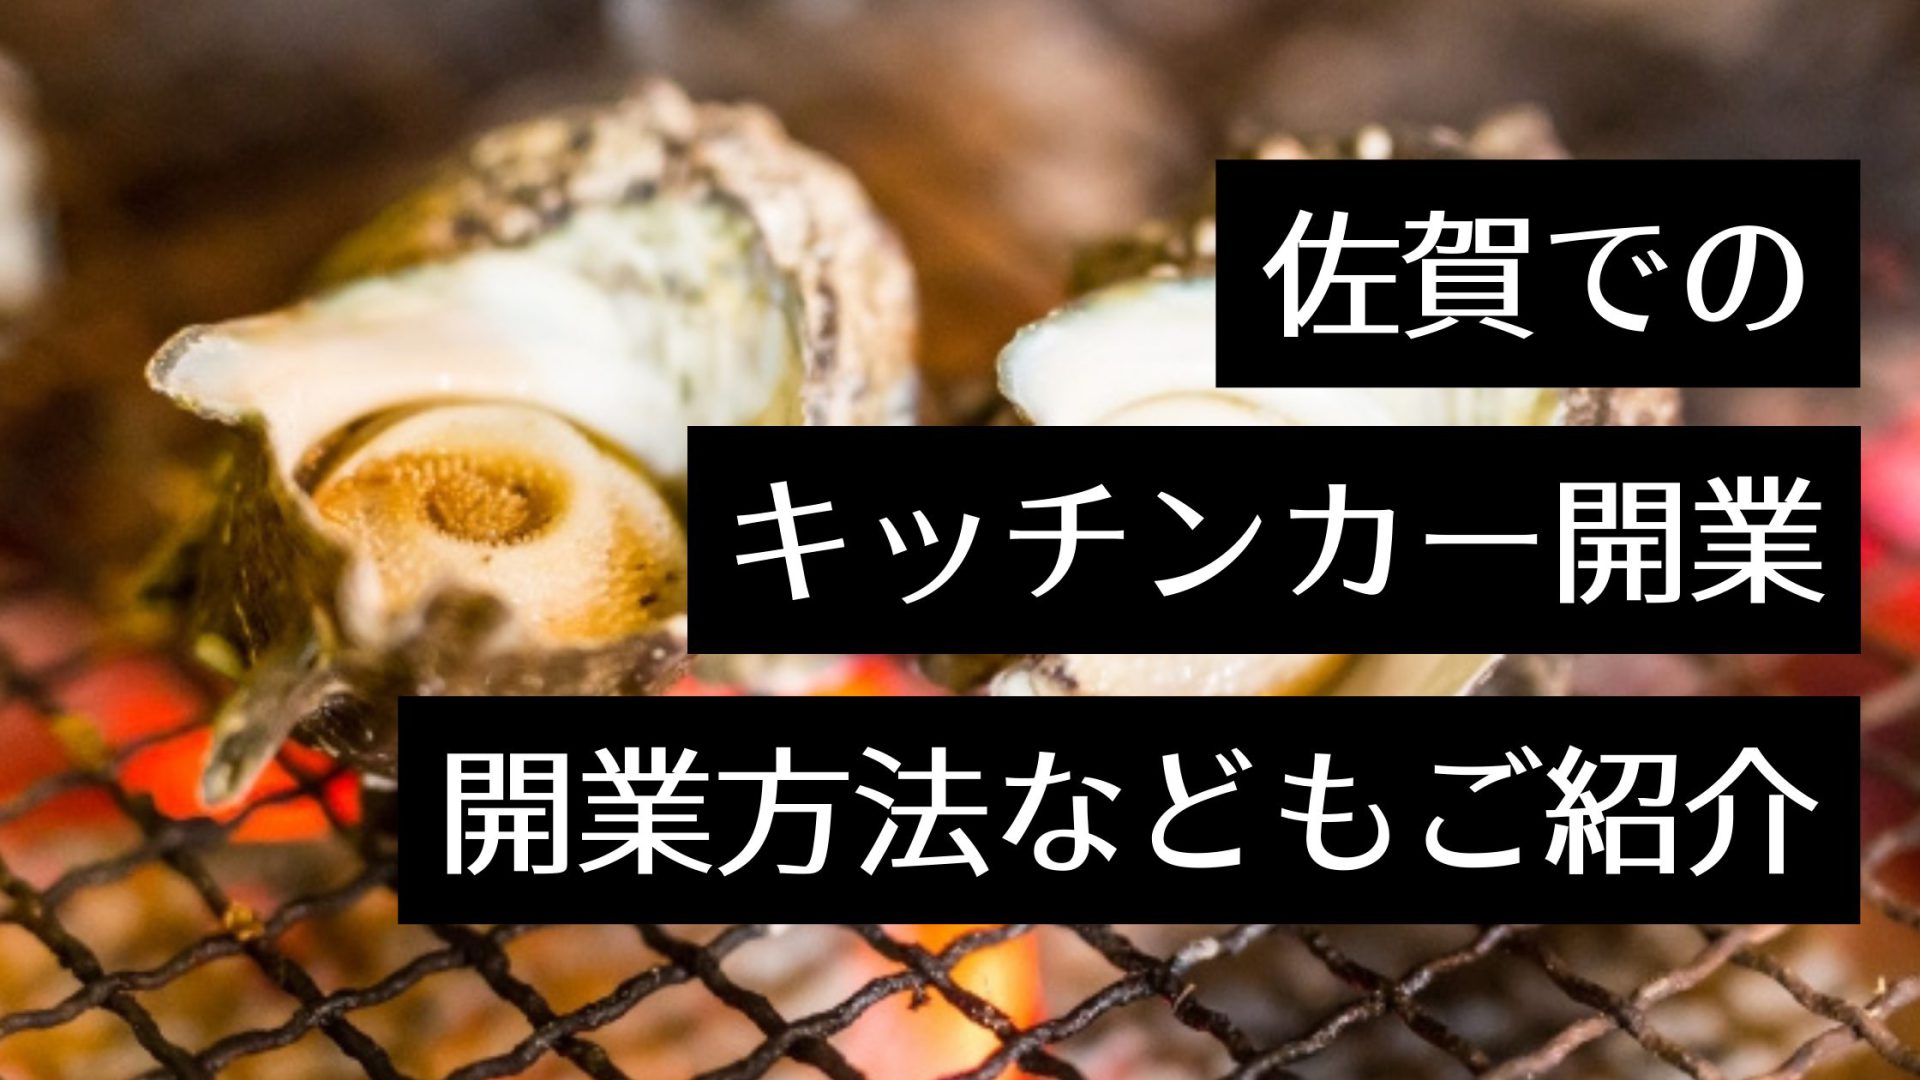 佐賀県でキッチンカーを開業したい！人気のグルメやイベント情報など出店に役立つ情報まとめ